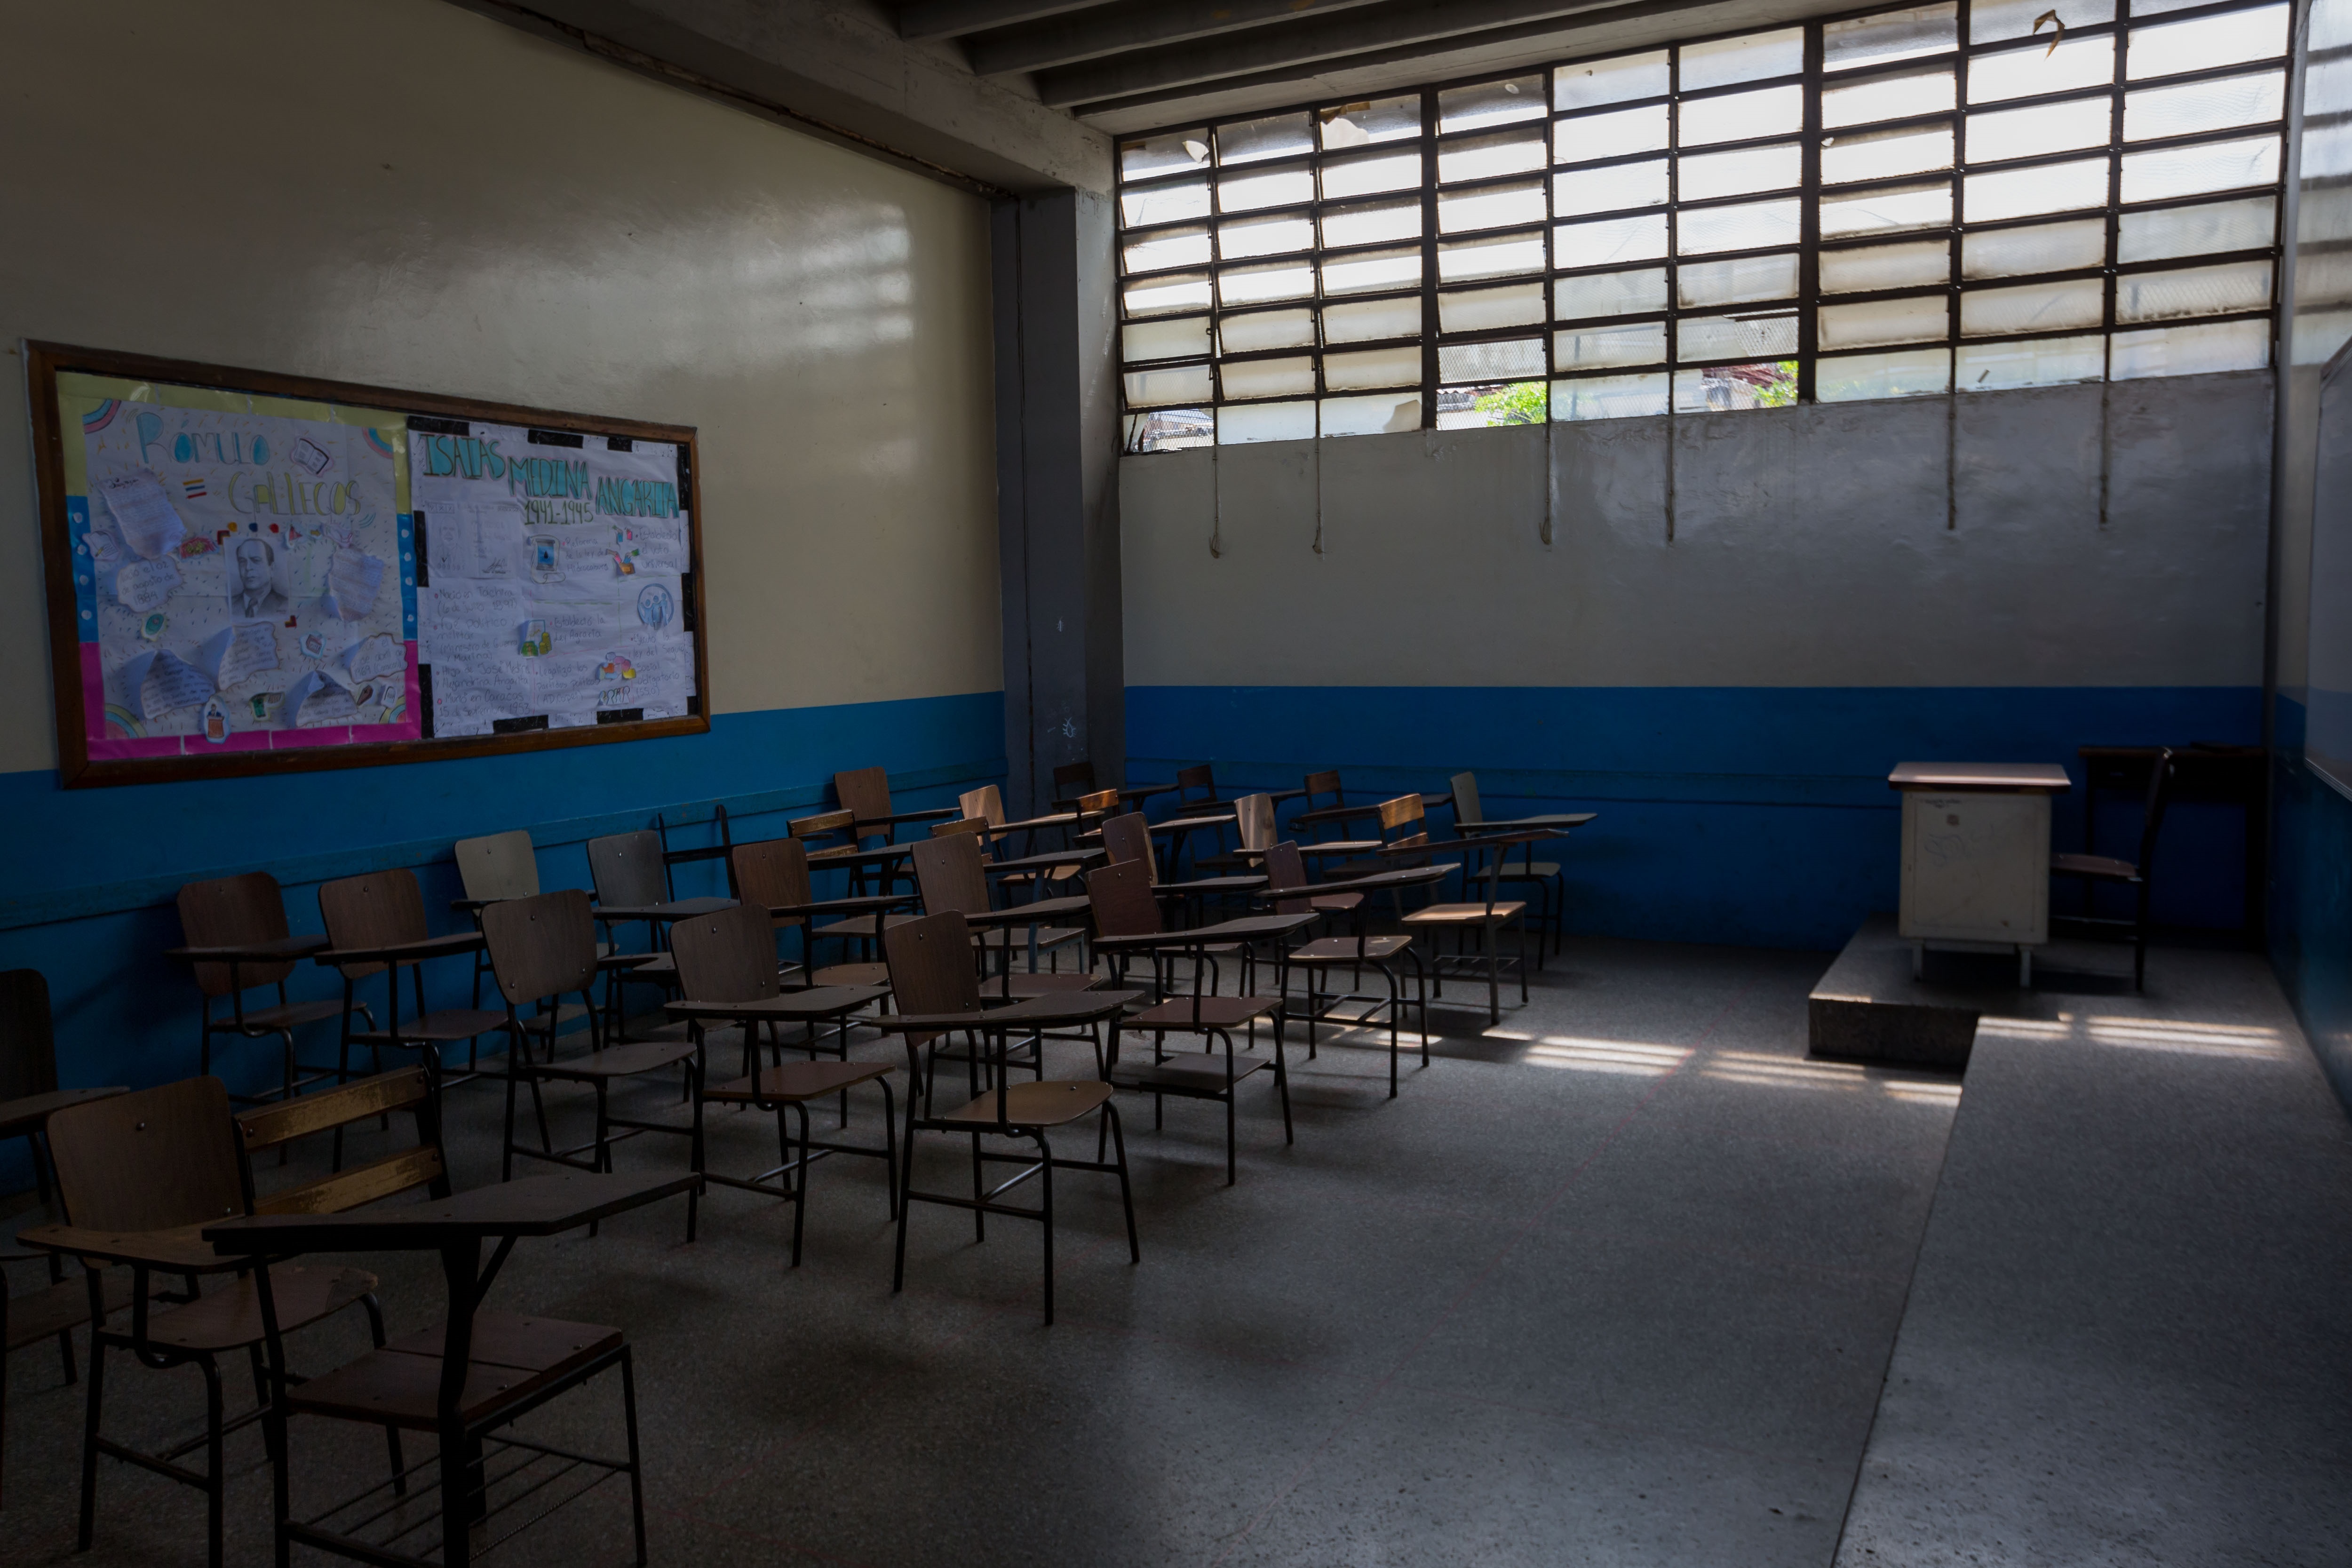 La primera materia del años escolar en Venezuela es la improvisación